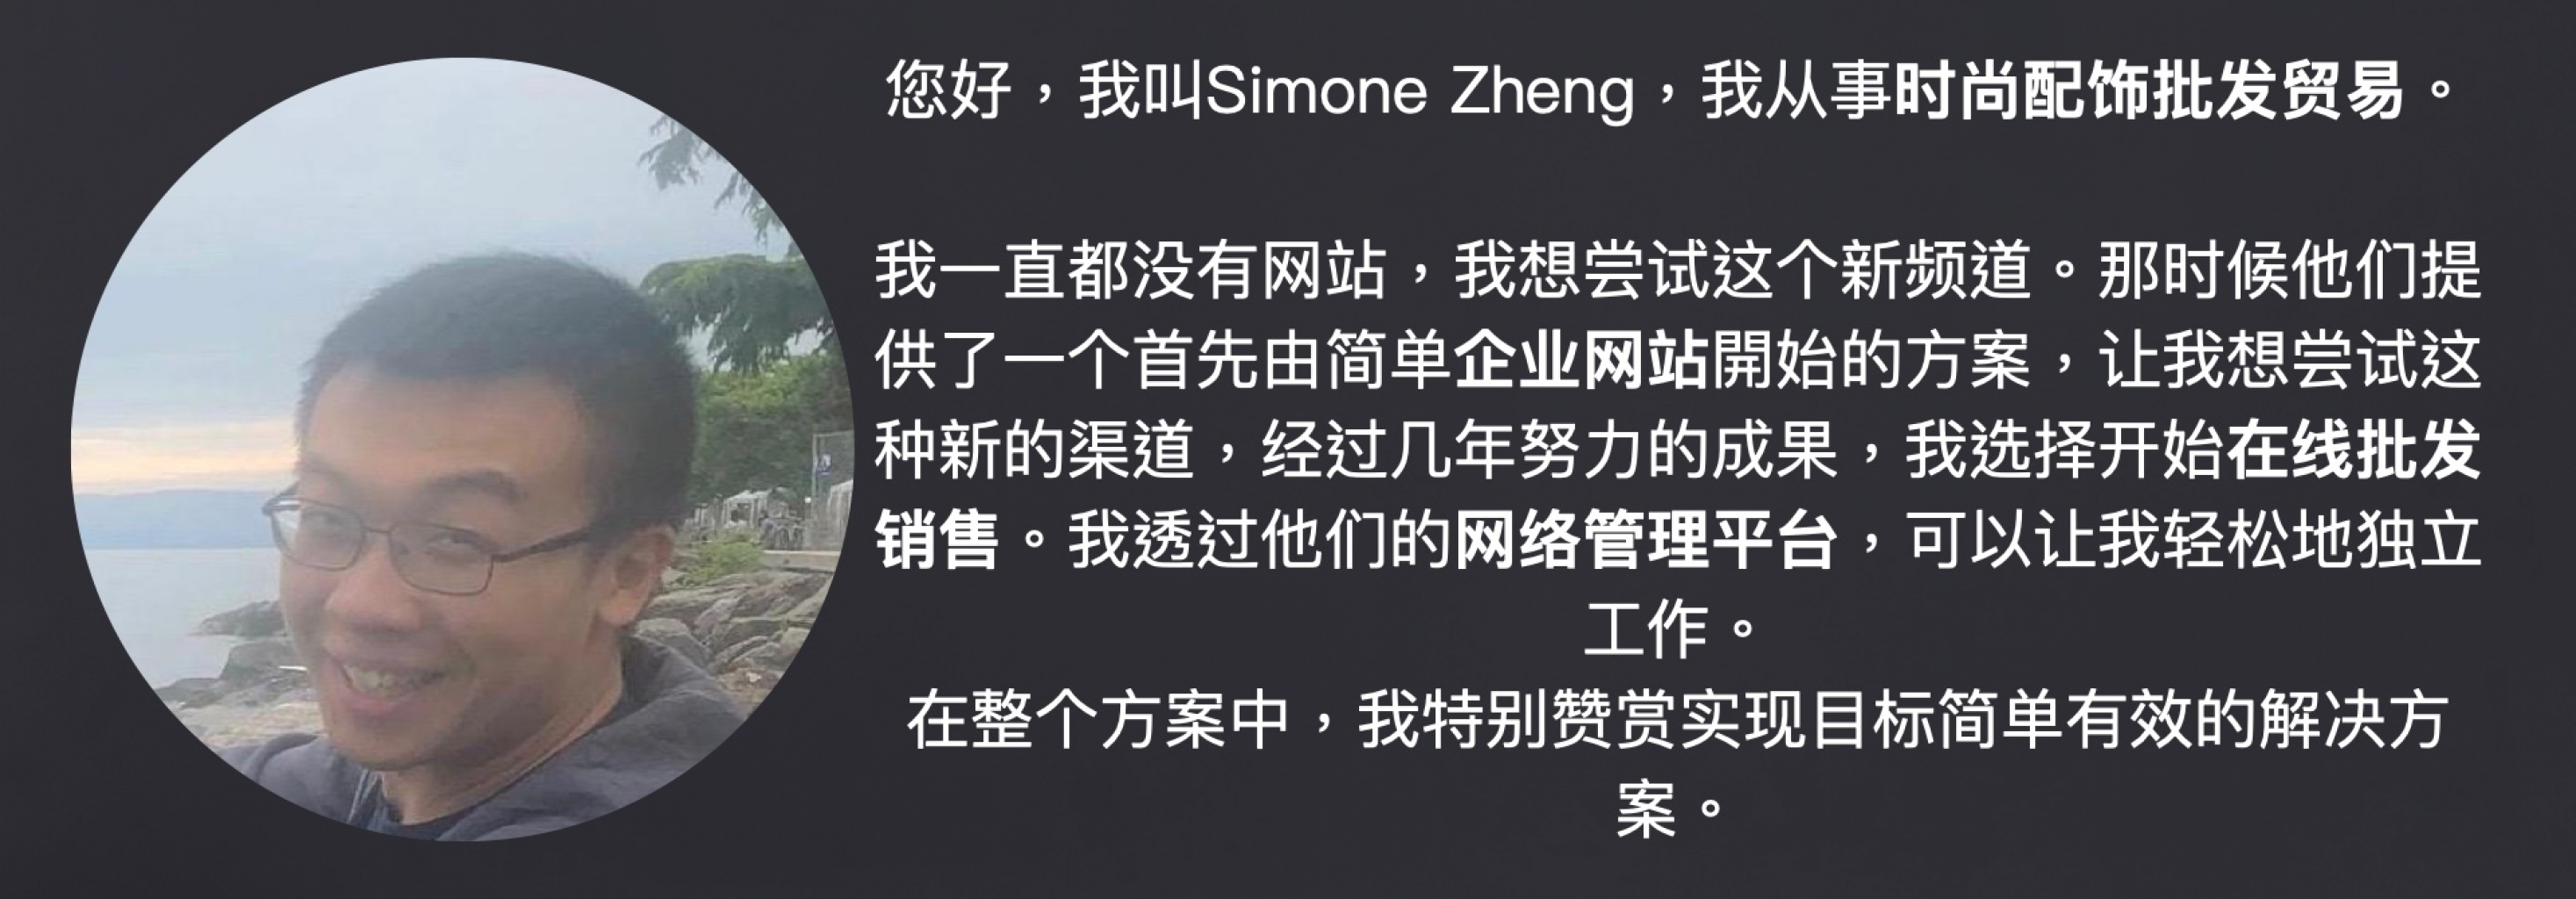 Simone Zheng